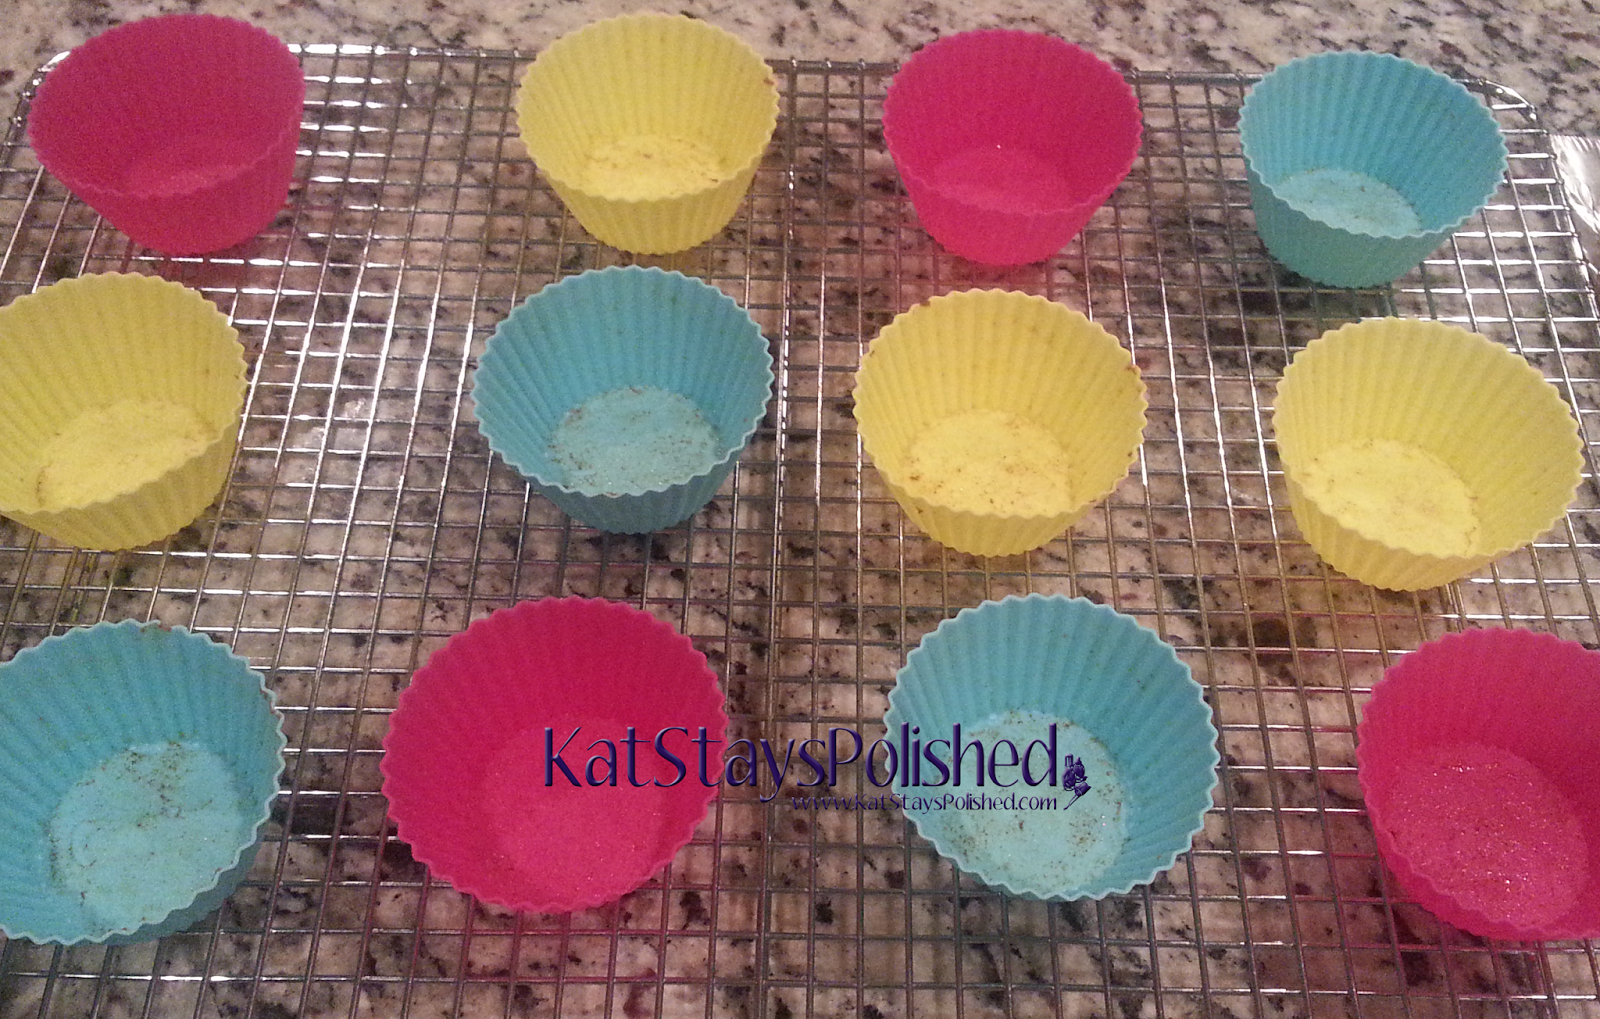 OvenArt Bakeware Silicone Baking Cups | SkinnyTaste Pumpkin Nut Muffins | Kat Stays Polished